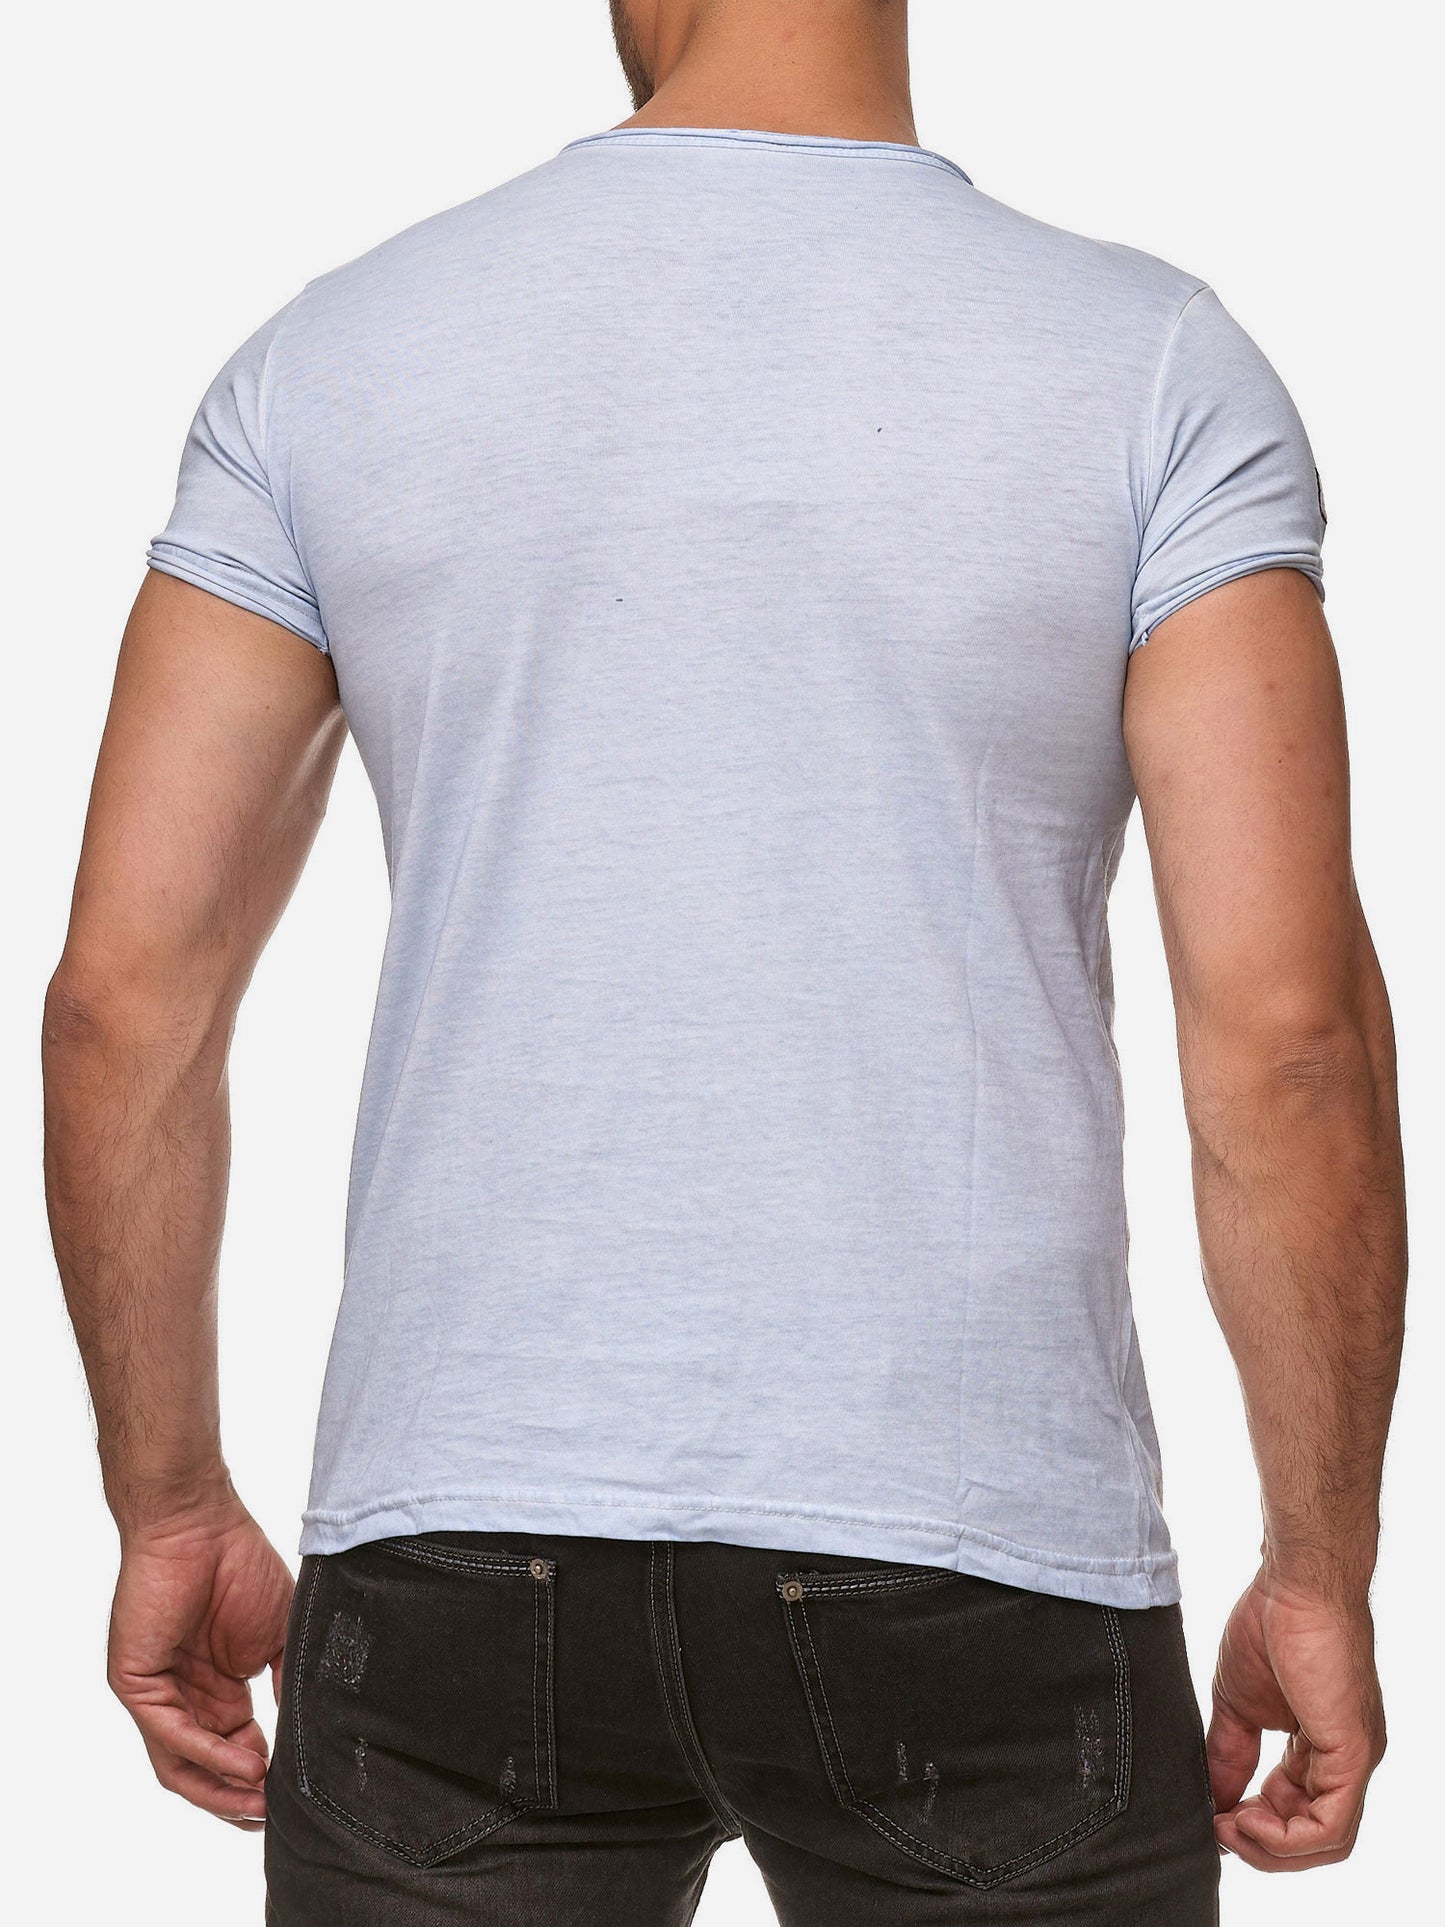 Tazzio Herren T-Shirt Ölwaschung 4050-1